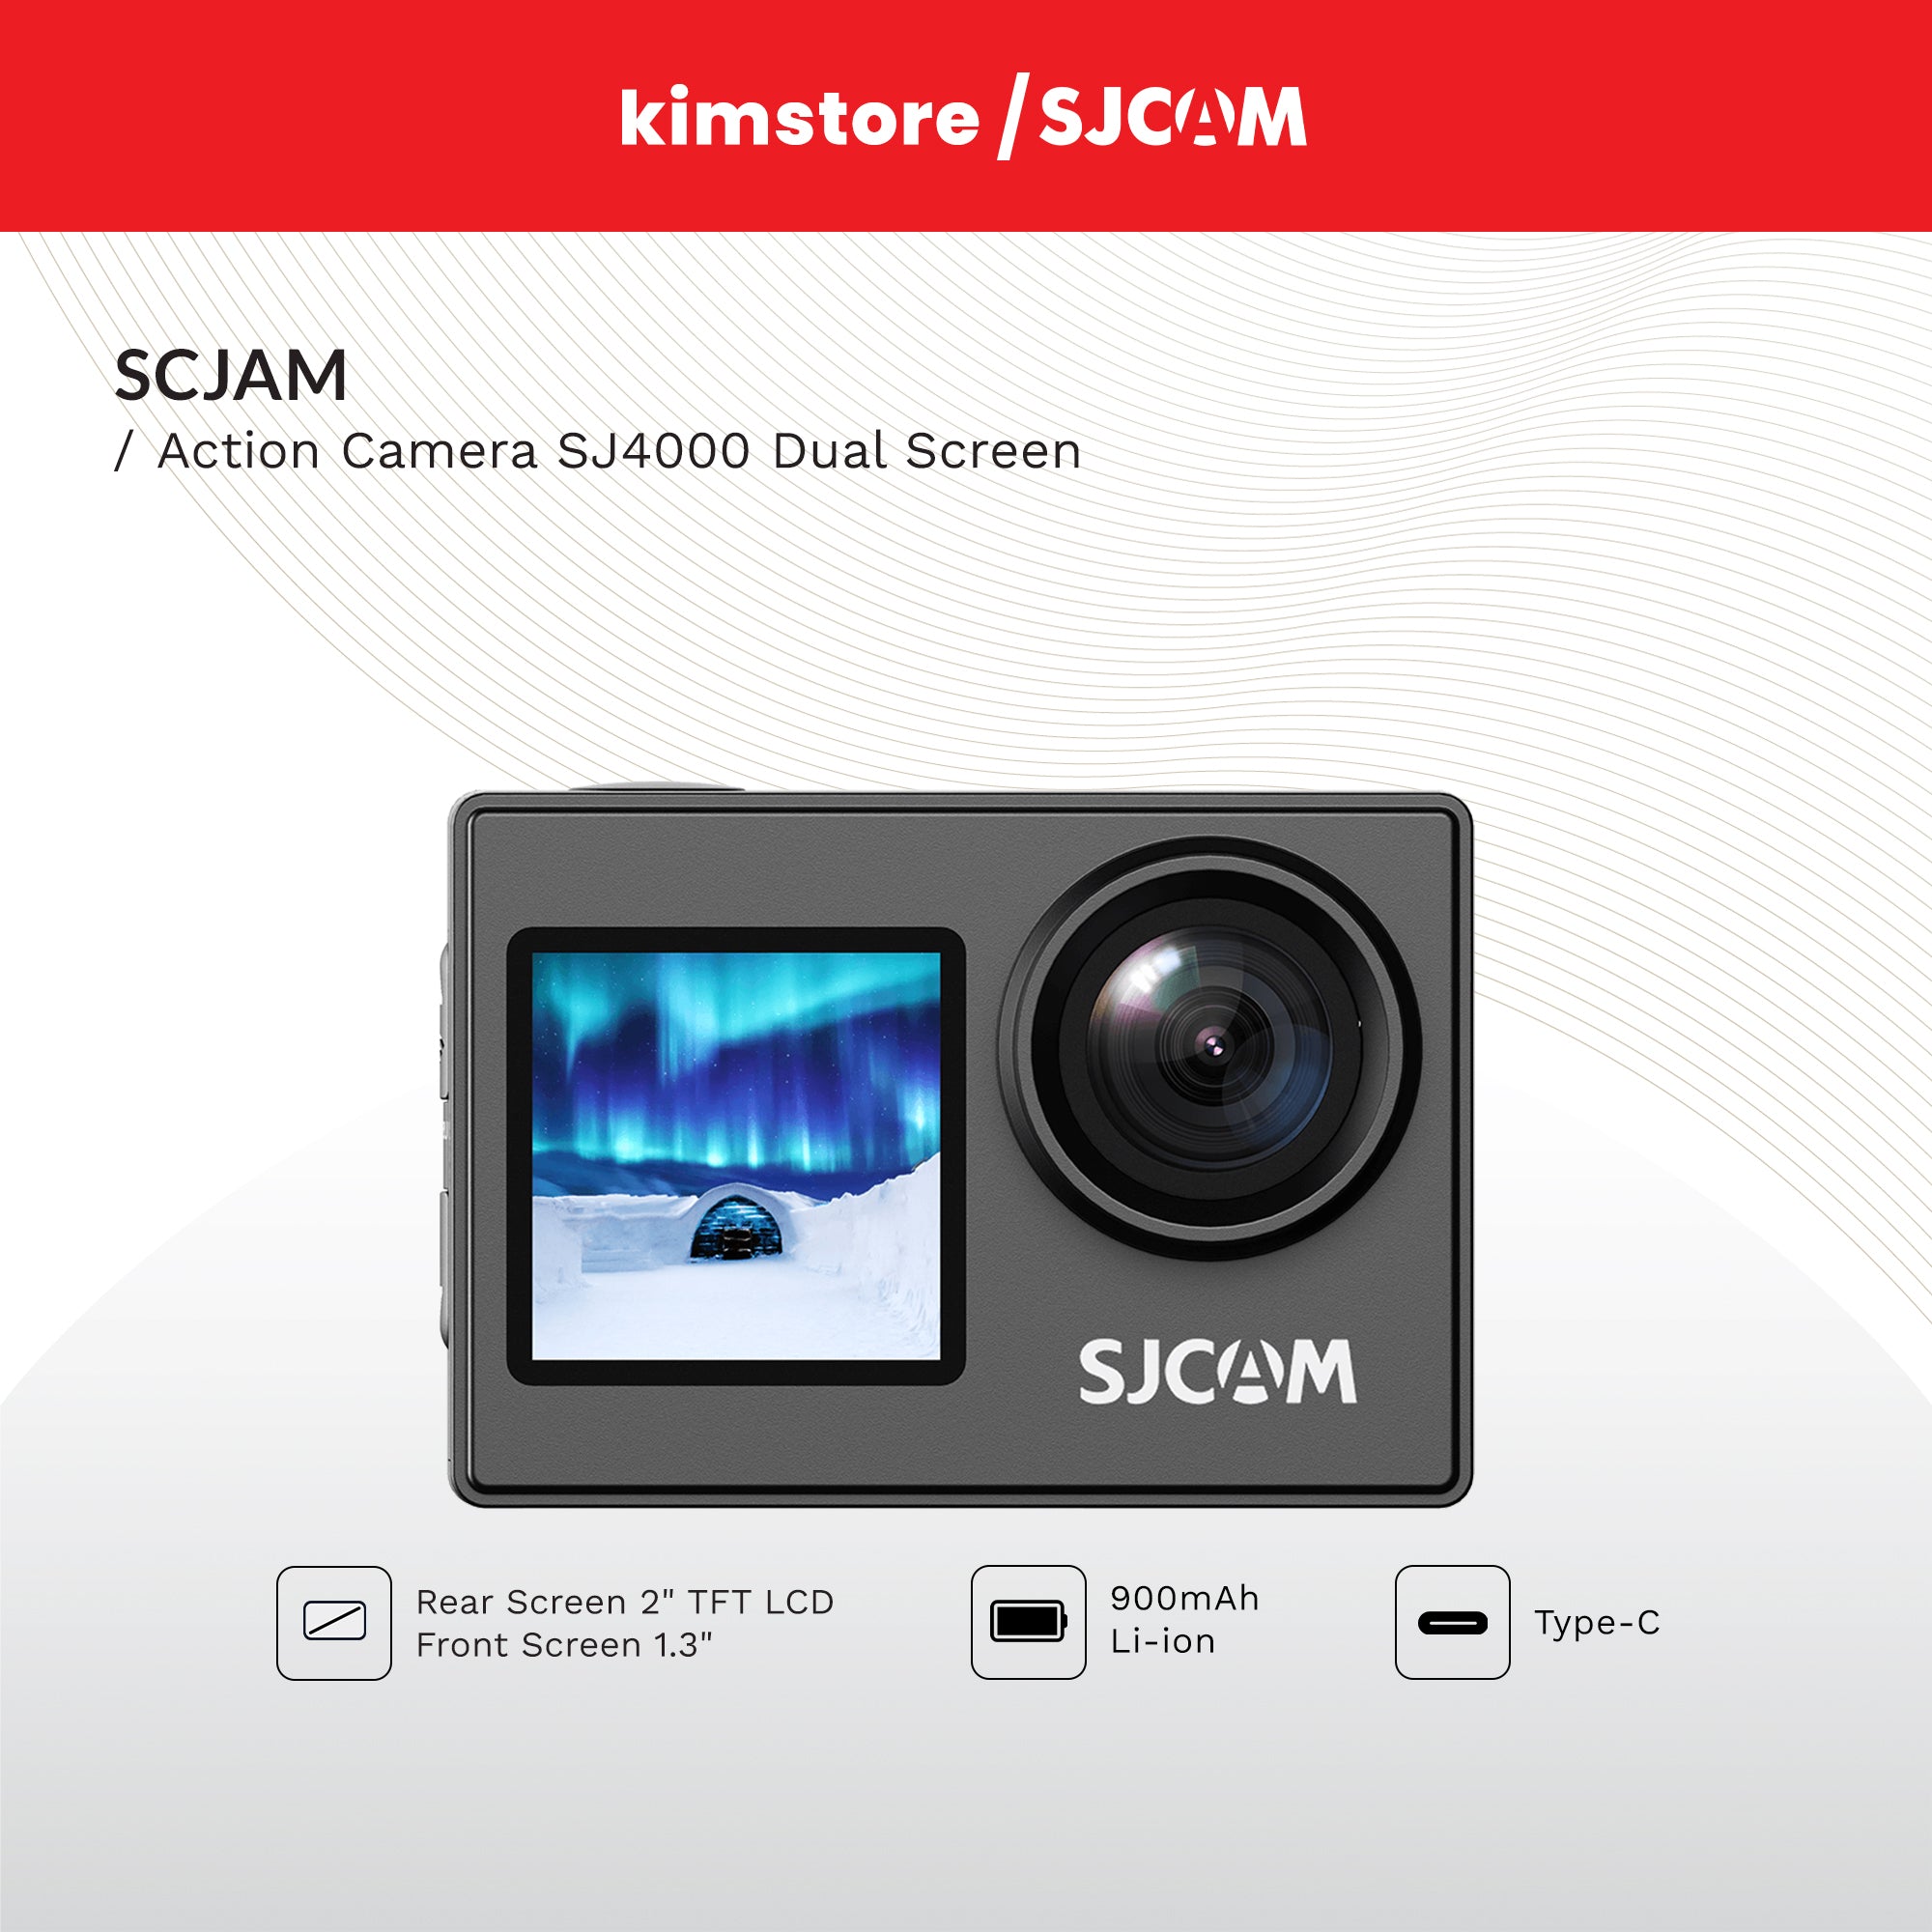 SJCAM Action Camera SJ4000 Dual Screen